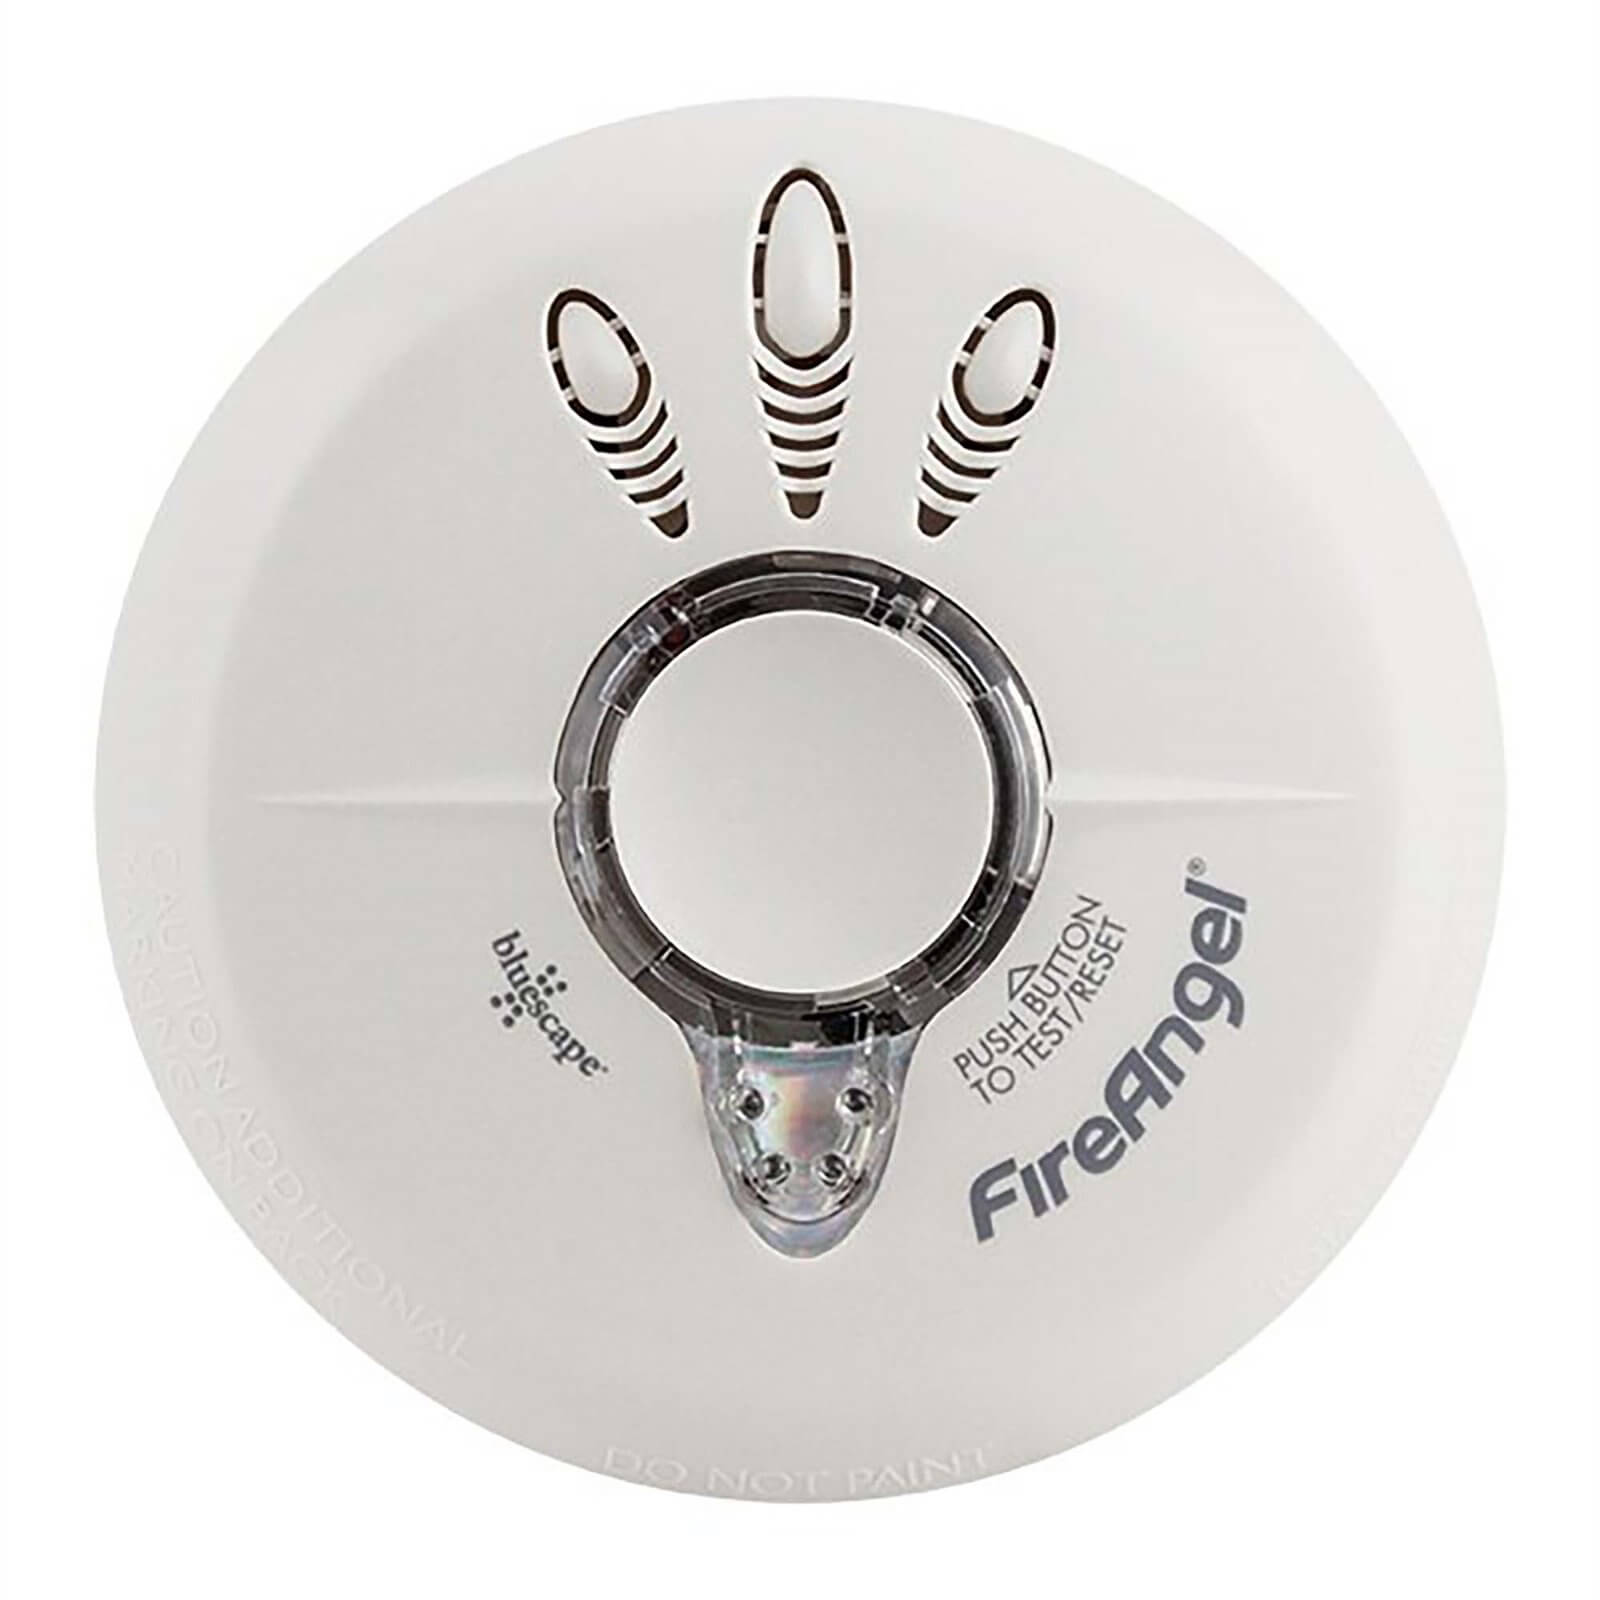 Fireangel LSI-601 Smoke Alarm